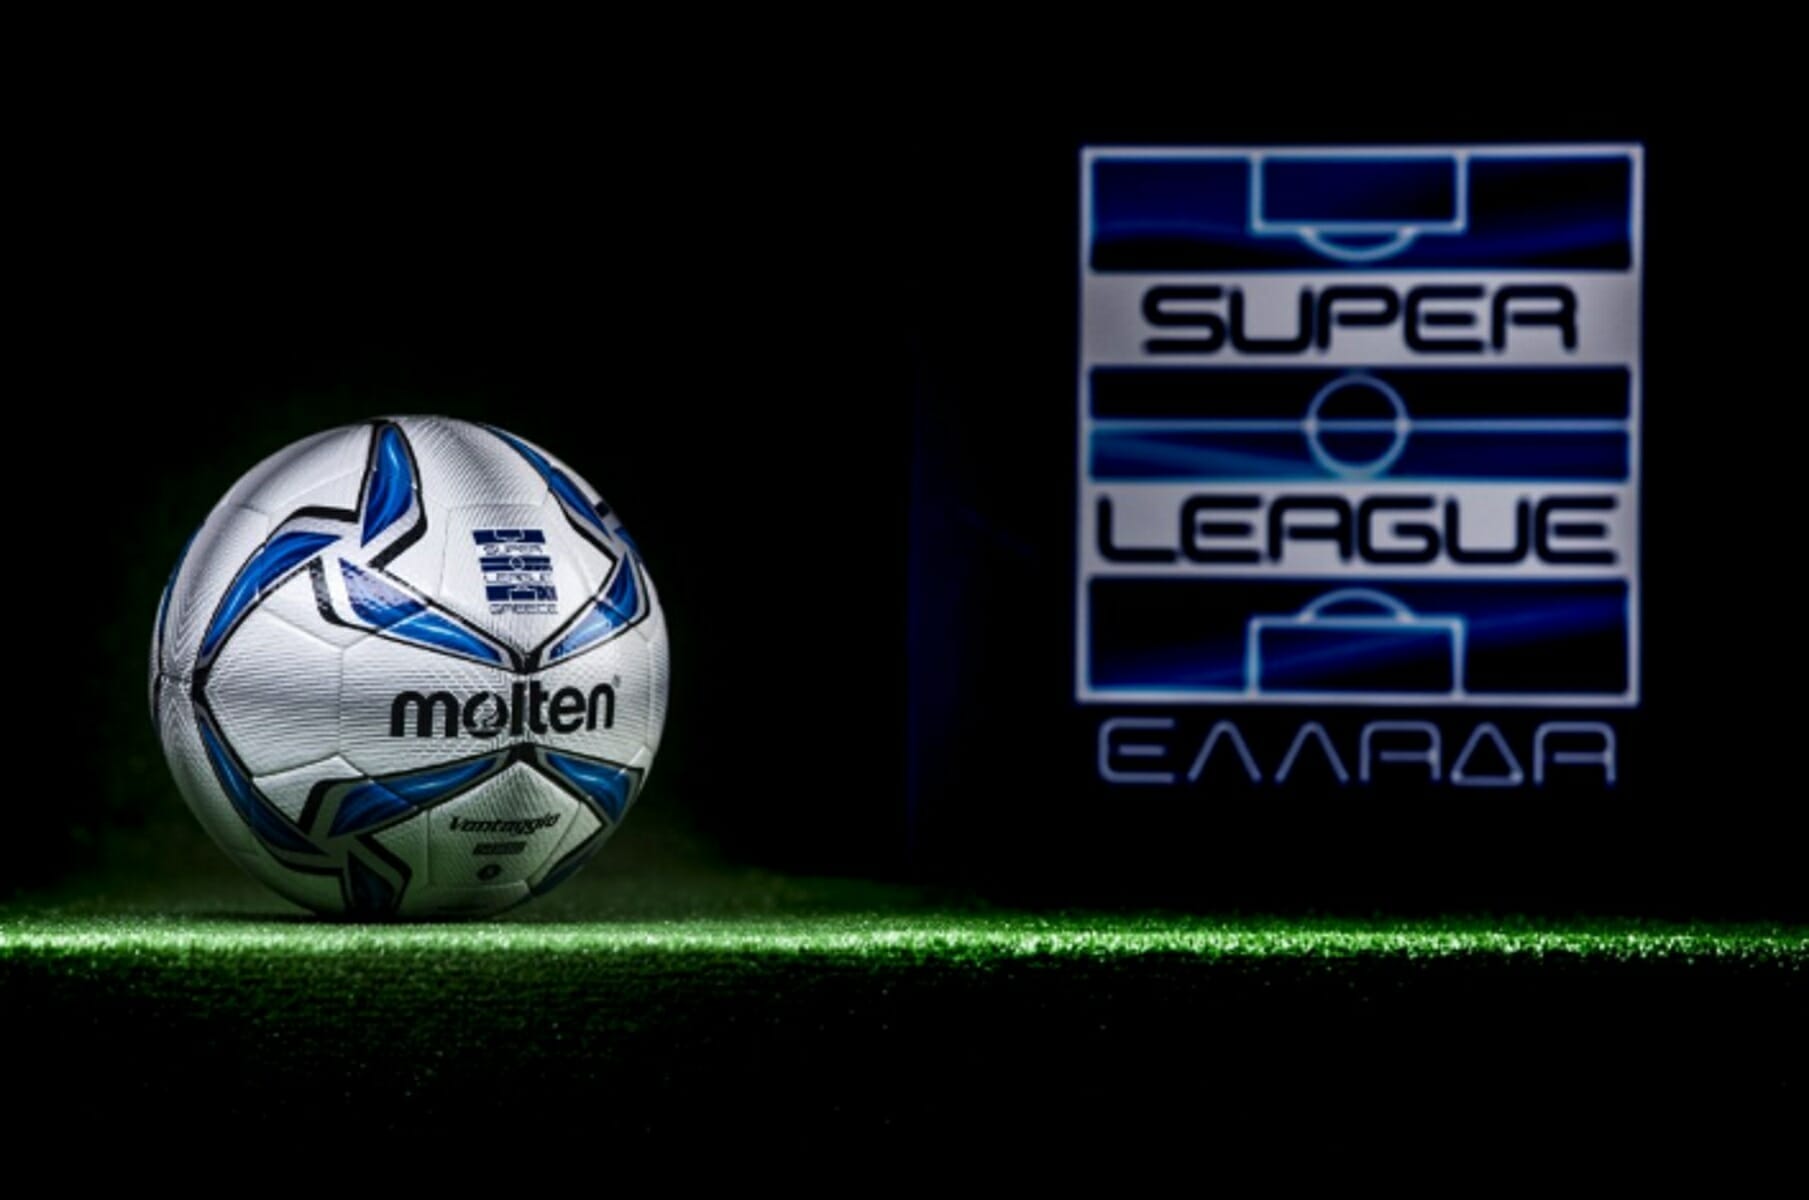 Οι ομάδες της Superleague αποφάσισαν επανέναρξη του πρωταθλήματος με ενστάσεις